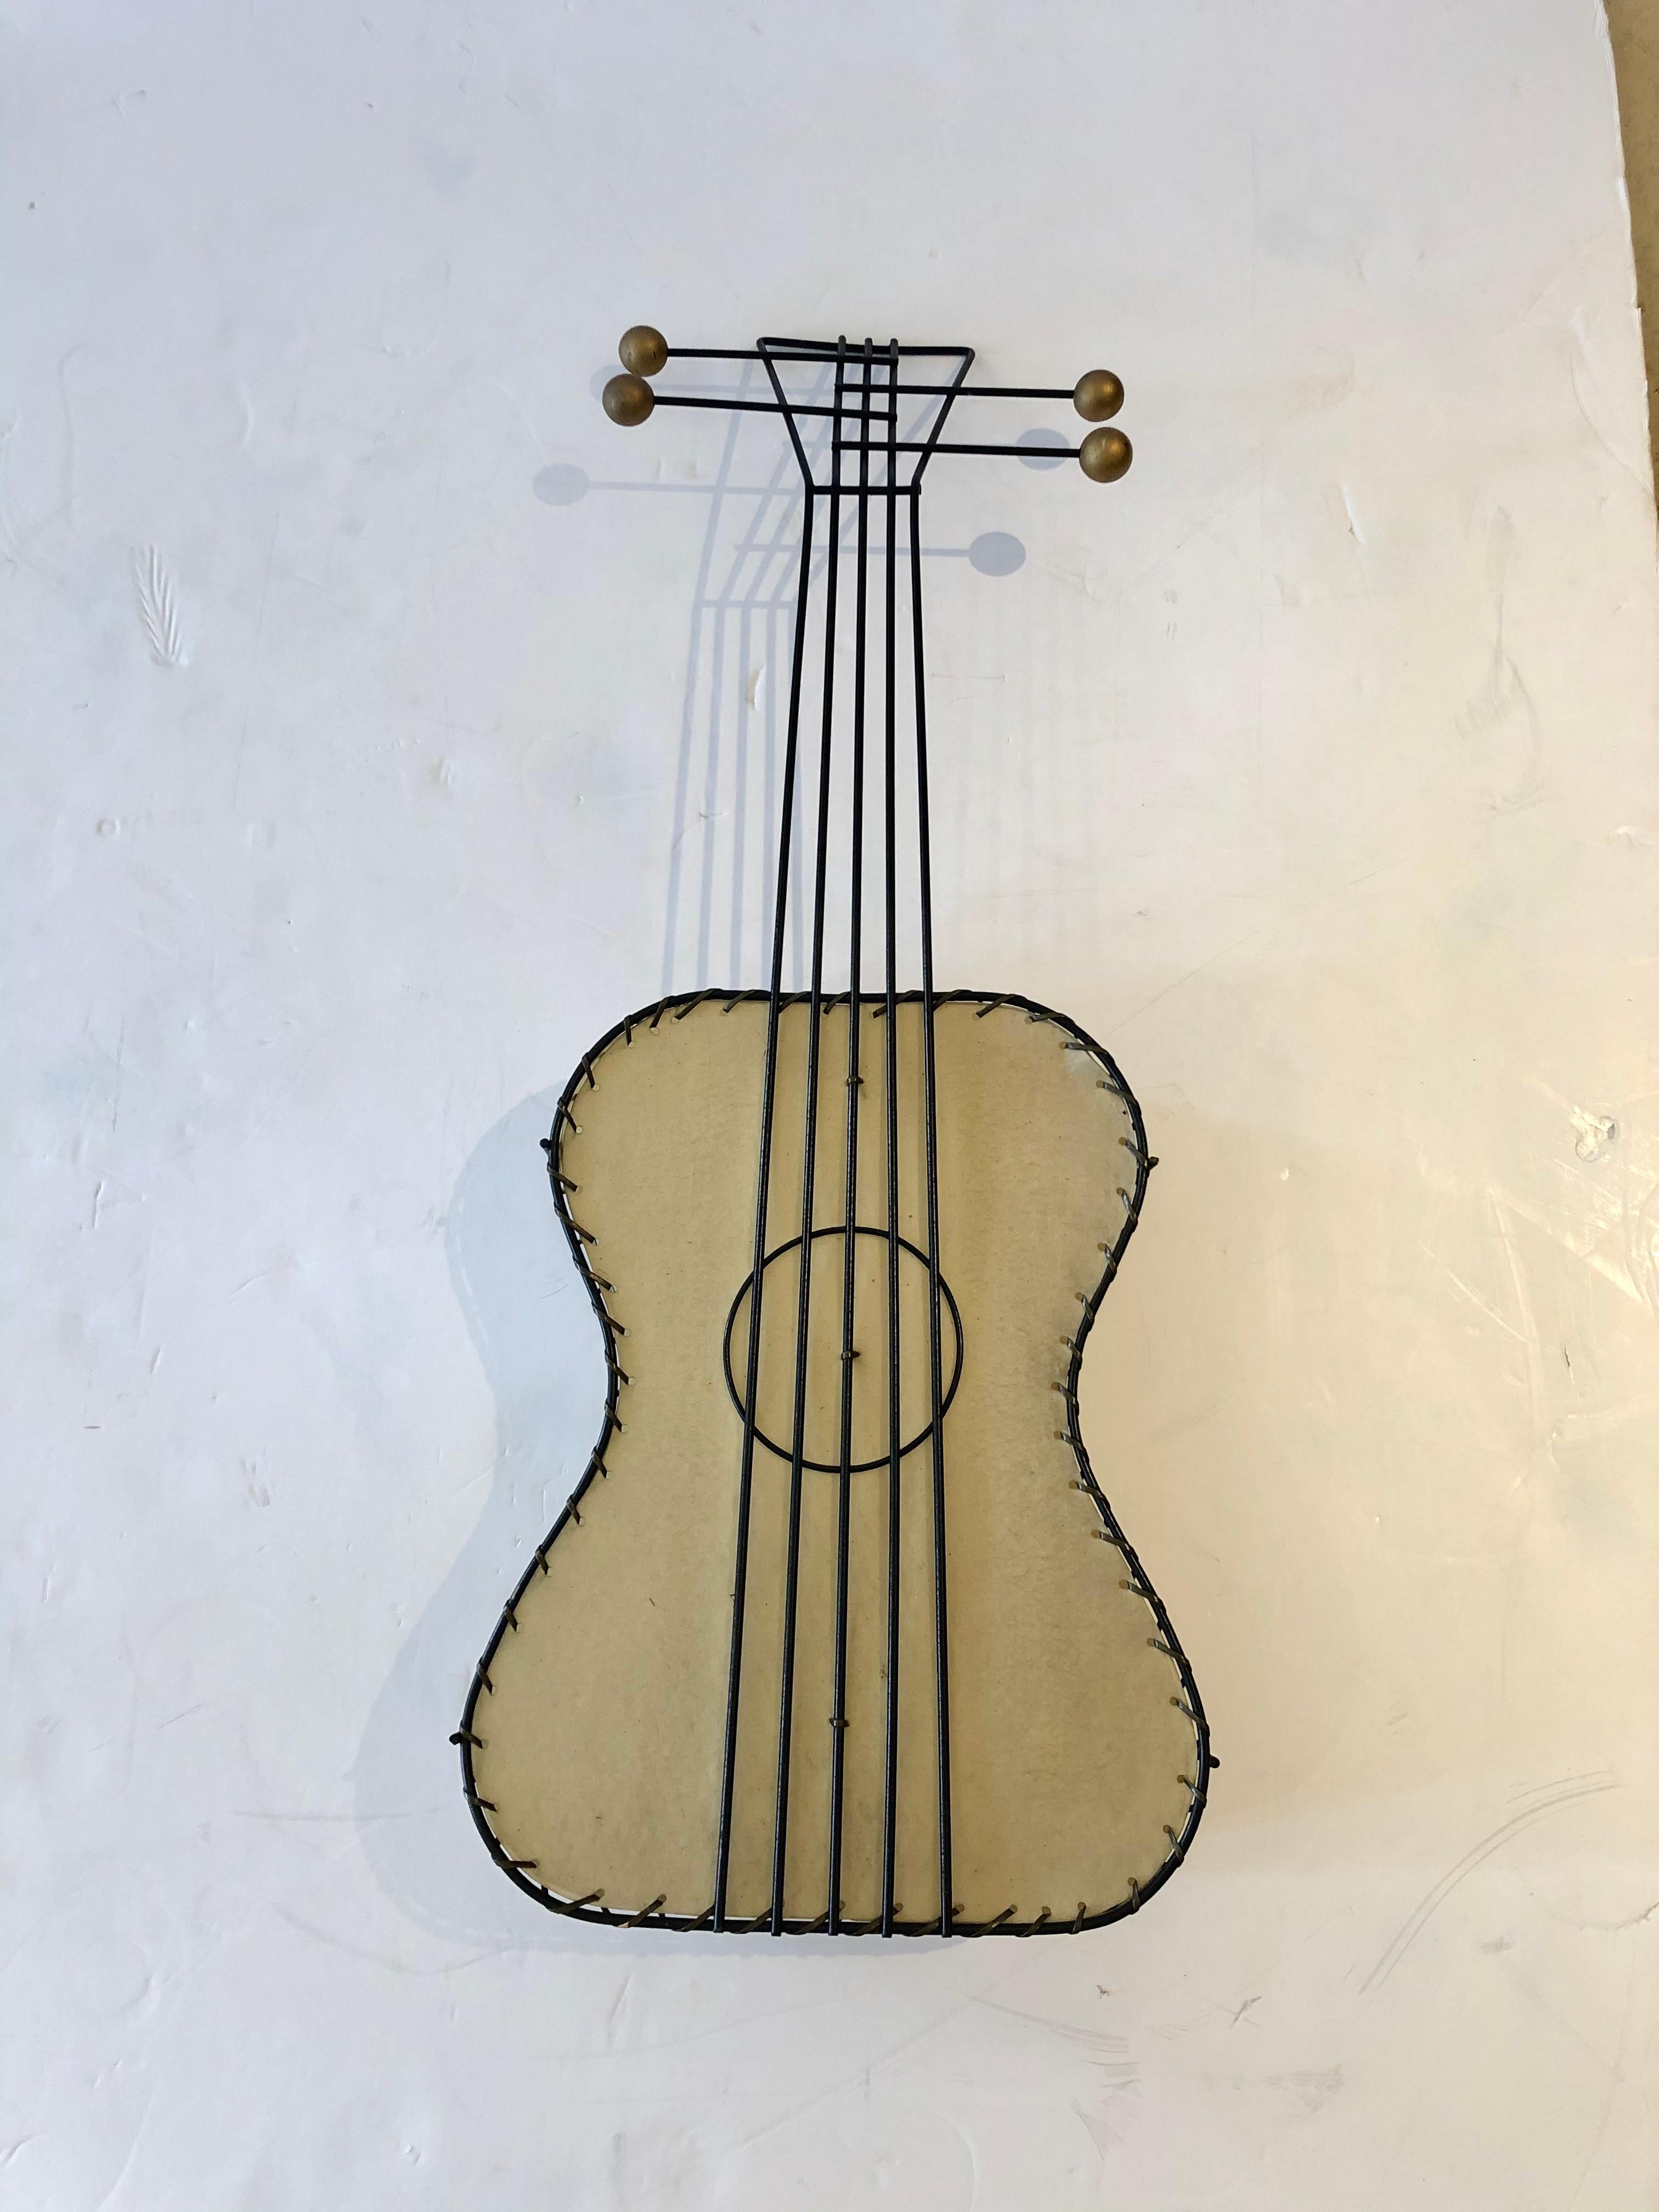 Une applique murale de collection de style Mid-Century Modern en forme de guitare stylisée faite de fer, de laiton et de Naugahyde étiré par Frederick Weinberg. Une ampoule à l'intérieur. C'est très joli, illuminé ou non. Comme une pièce de